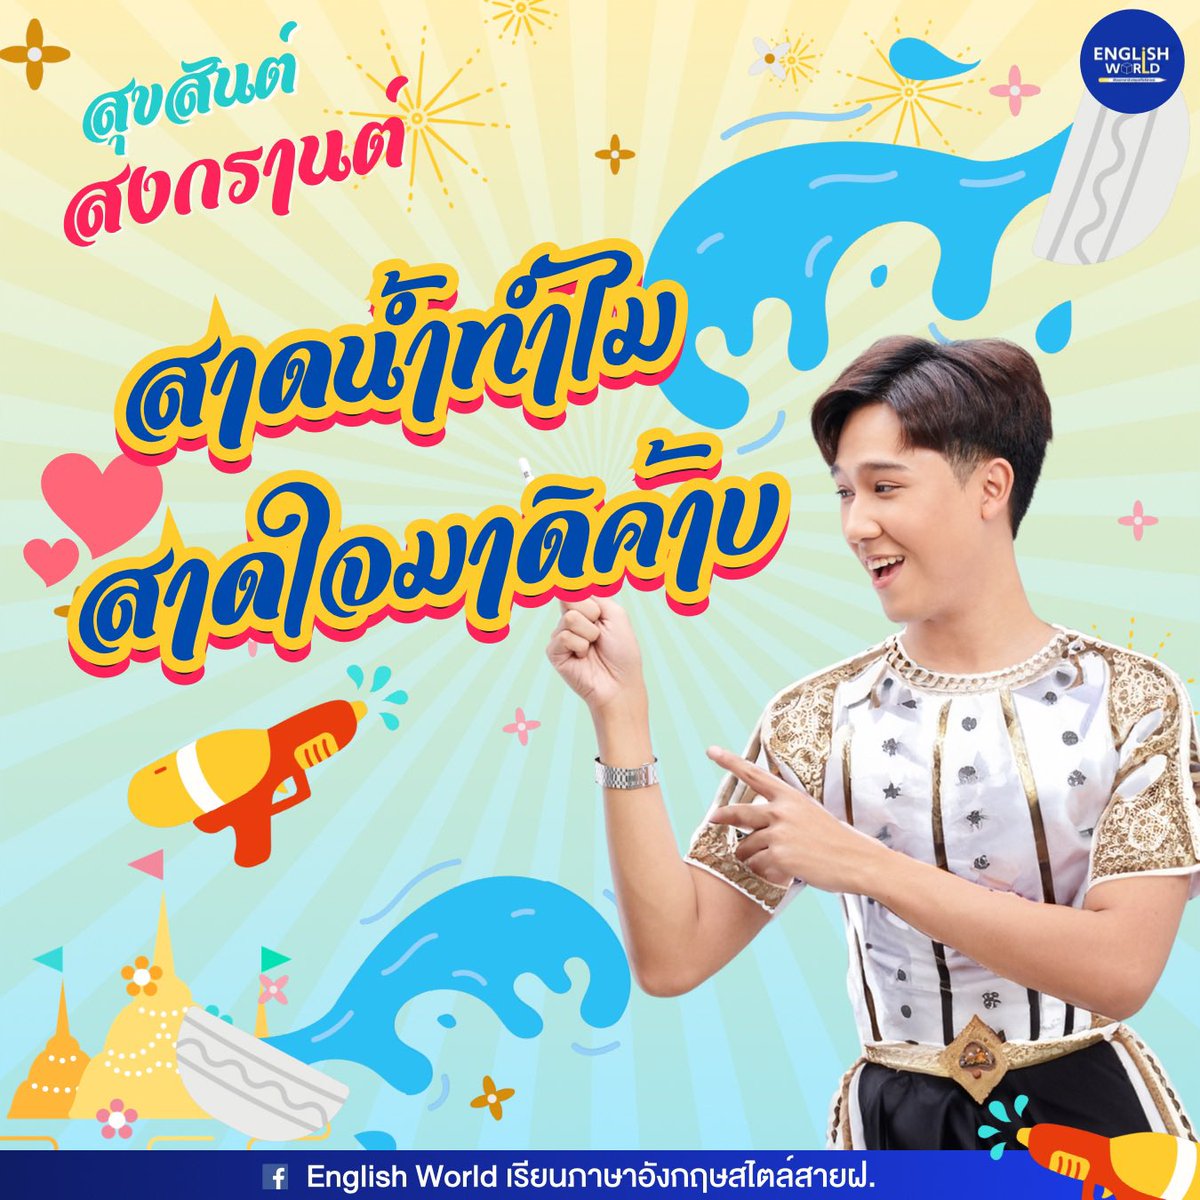 Wishing you a joyful Songkran 2024 💦🔫 คำขวัญประจำปี 2024 ที่พี่ต้นยกให้เป็น No.1 แห่งปีได้แก่ “สาดน้ำทำไม สาดใจมาดิค้าบ” ในช่วงระหว่างเทศกาลสงกรานต์สถาบันยังคงเปิดให้บริการไม่ว่าจะเป็นการสมัครคอร์สเรียนหรือการสอบถามข้อมูลอื่นๆเพิ่มเติมตลอด 24…